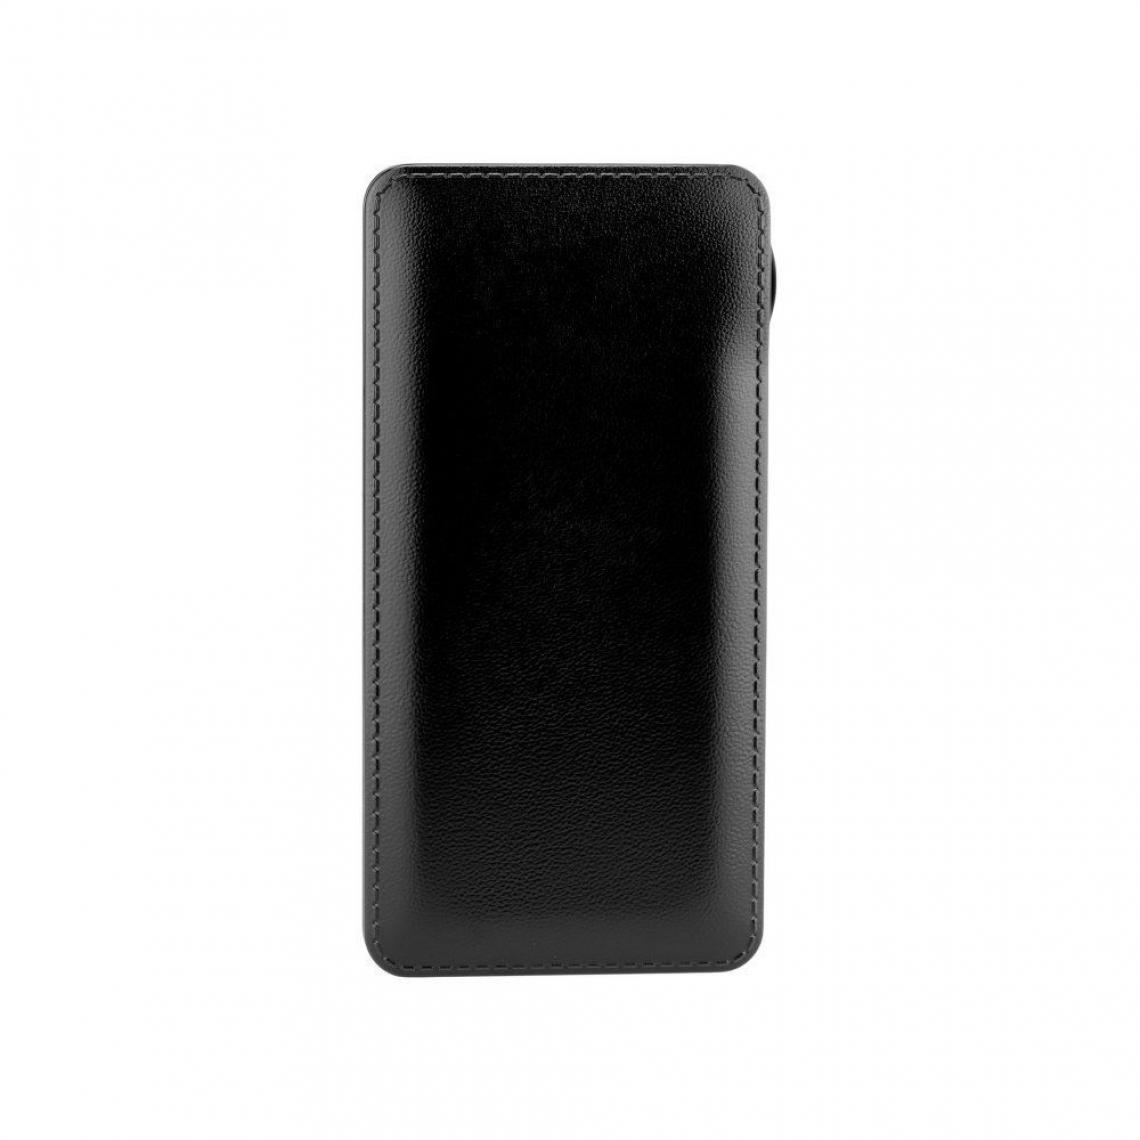 Ozzzo - Chargeur batterie externe 20000 mAh powerbank ozzzo noir pour UMiDIGI A7 - Autres accessoires smartphone